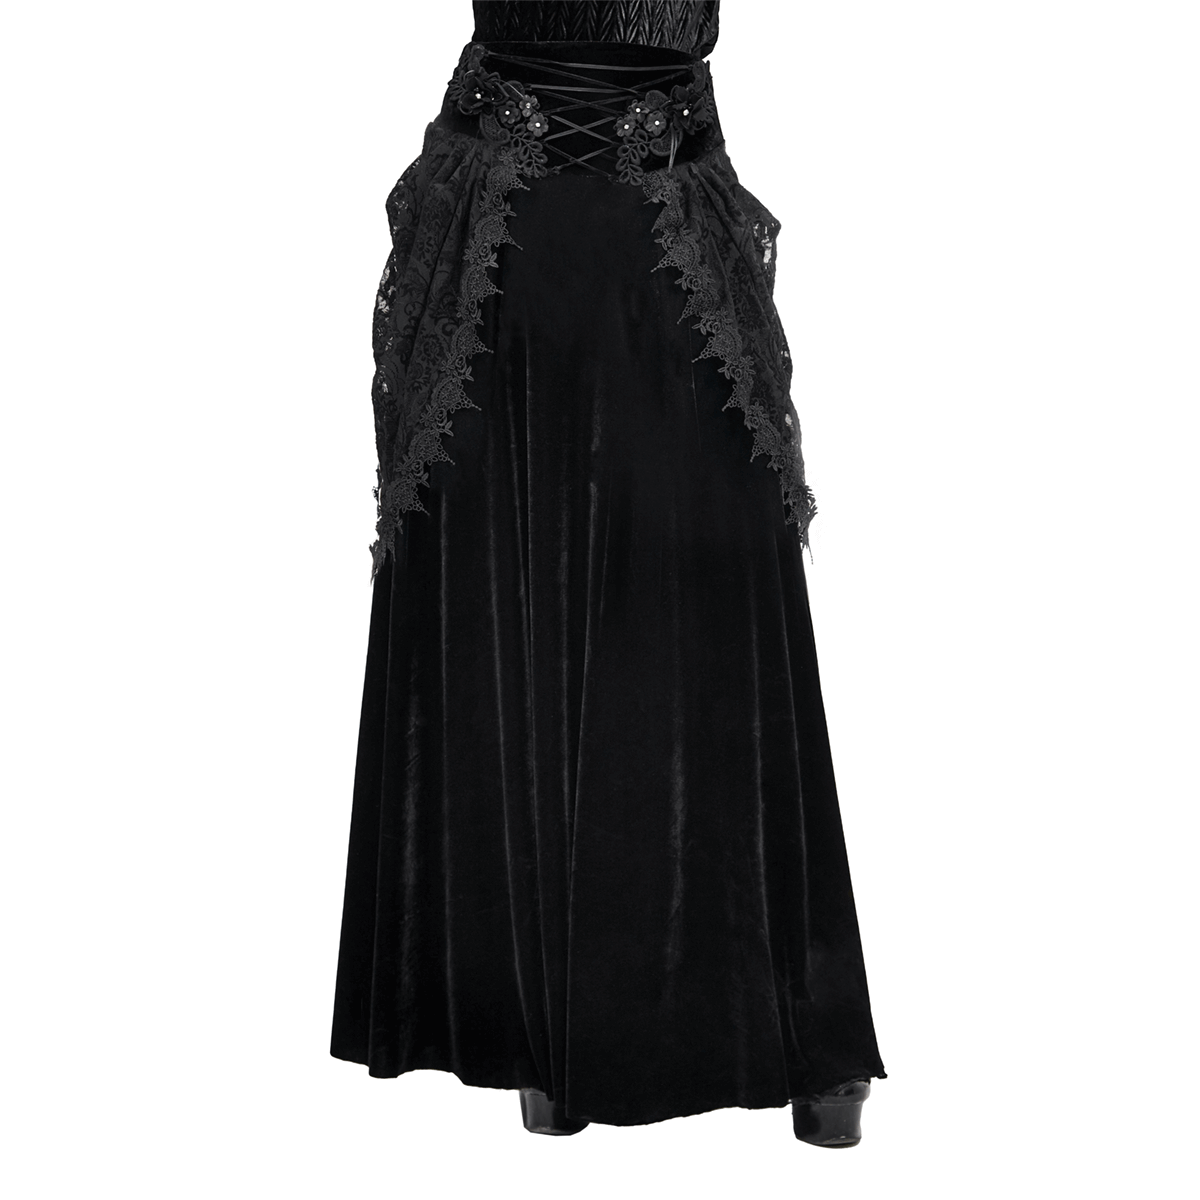 Female Vintage Gothic Velvet Lace Long Skirt / Women's Black Skirt with 3D Flowers - HARD'N'HEAVY